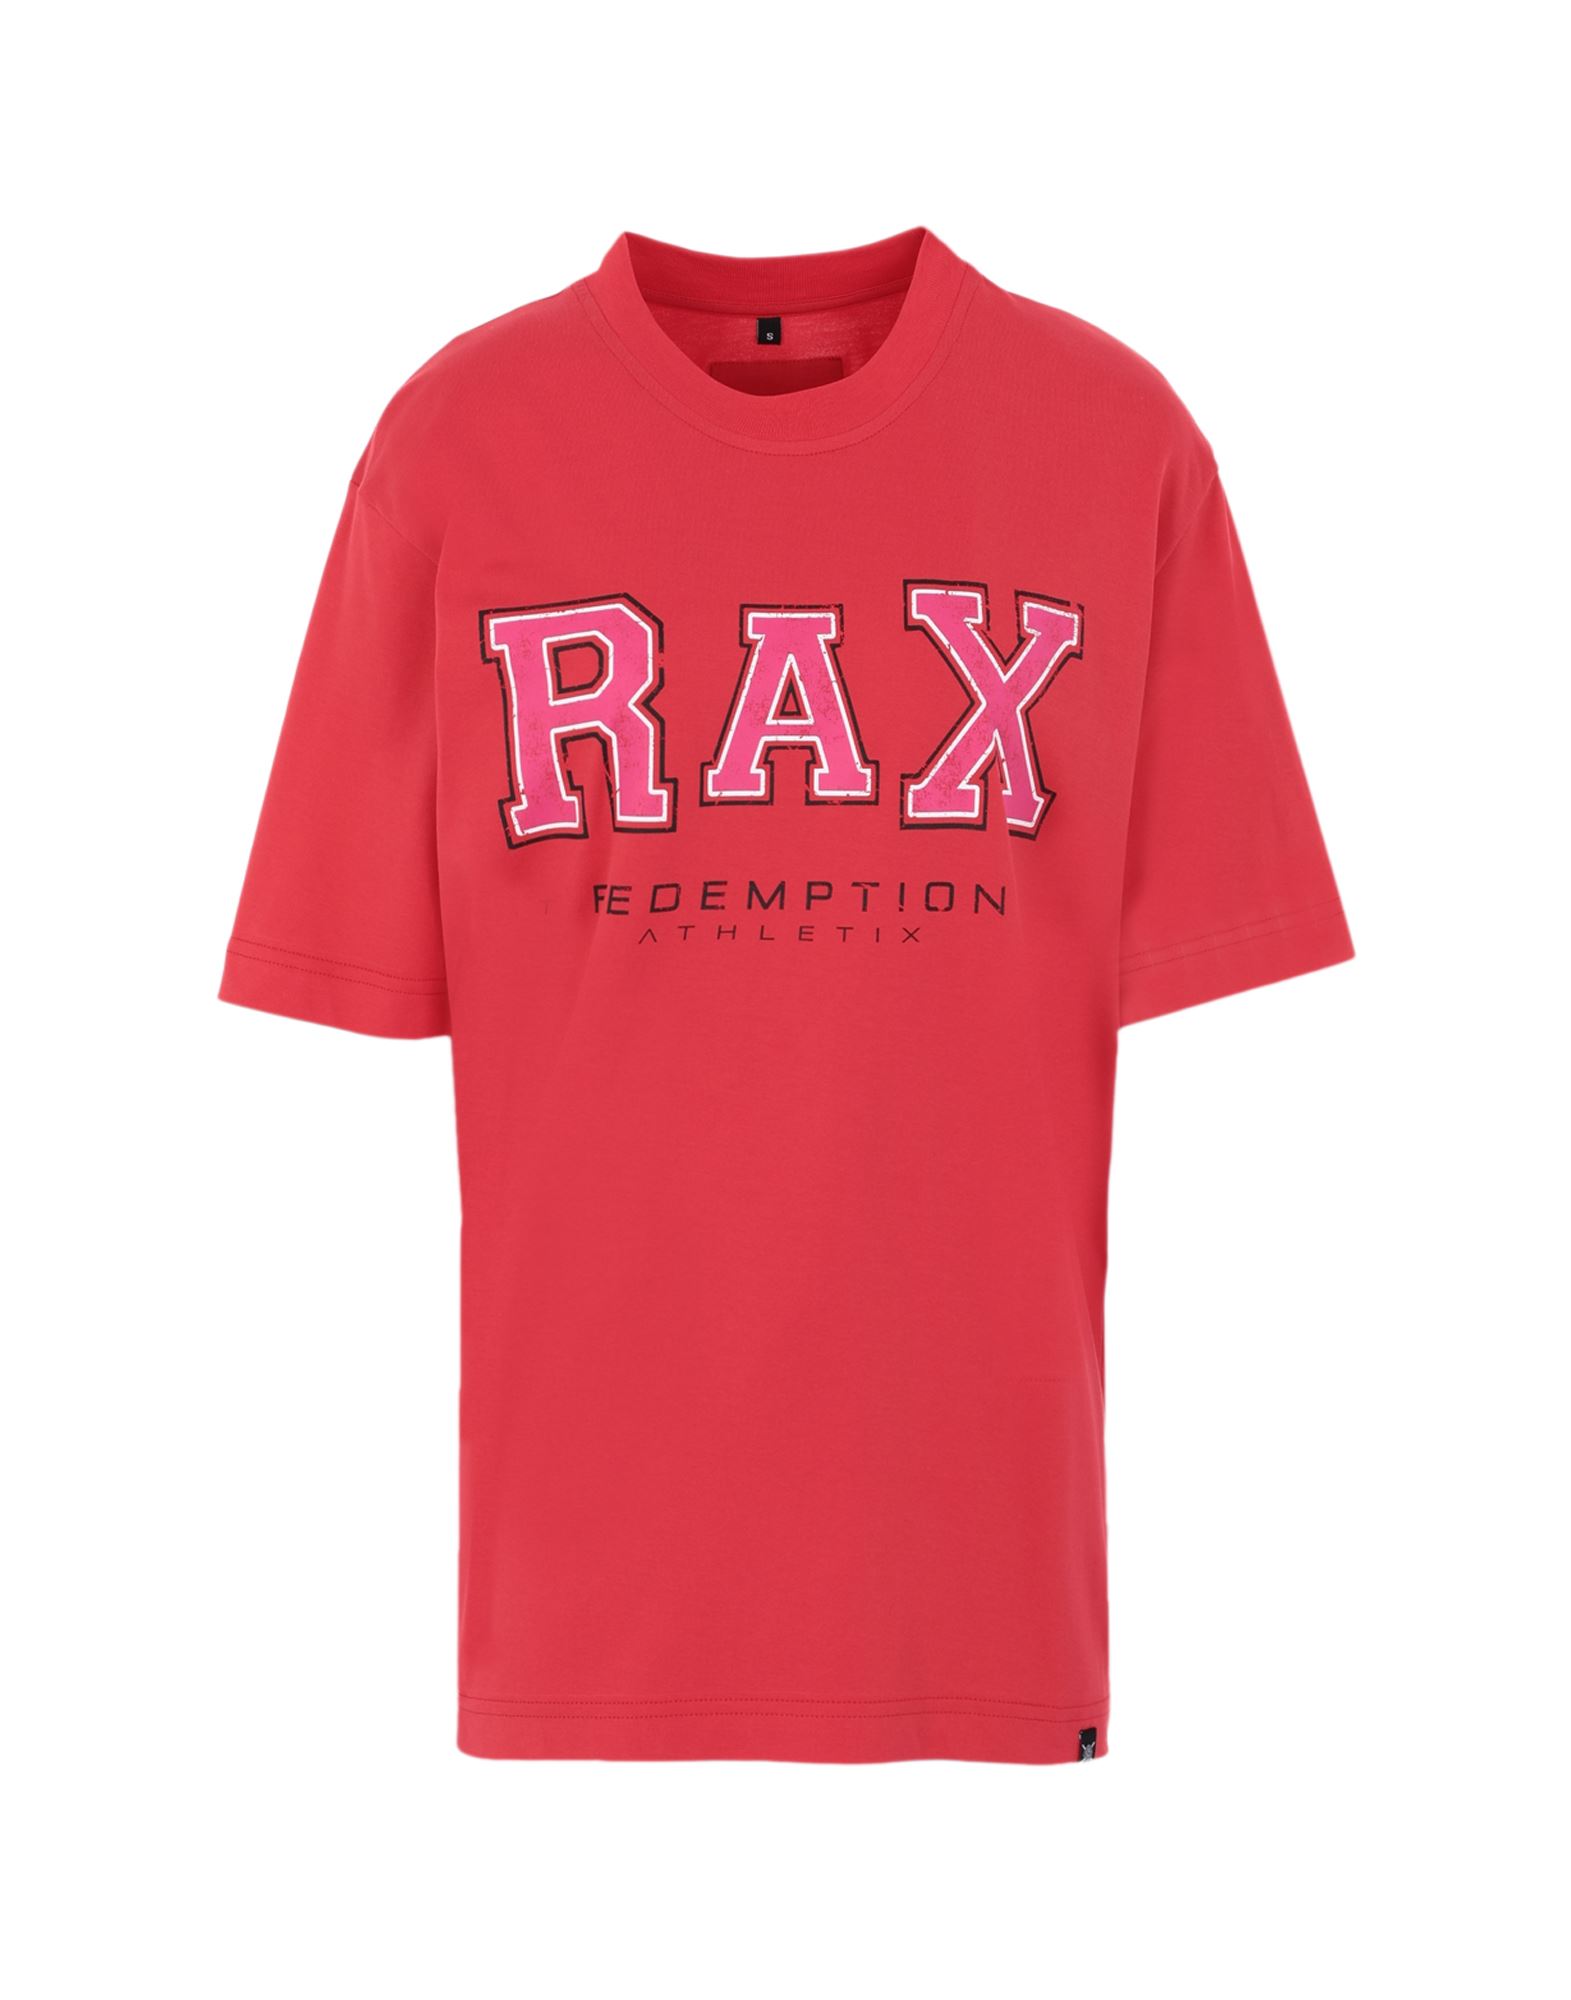 Redemption Athletix T-shirts In Red